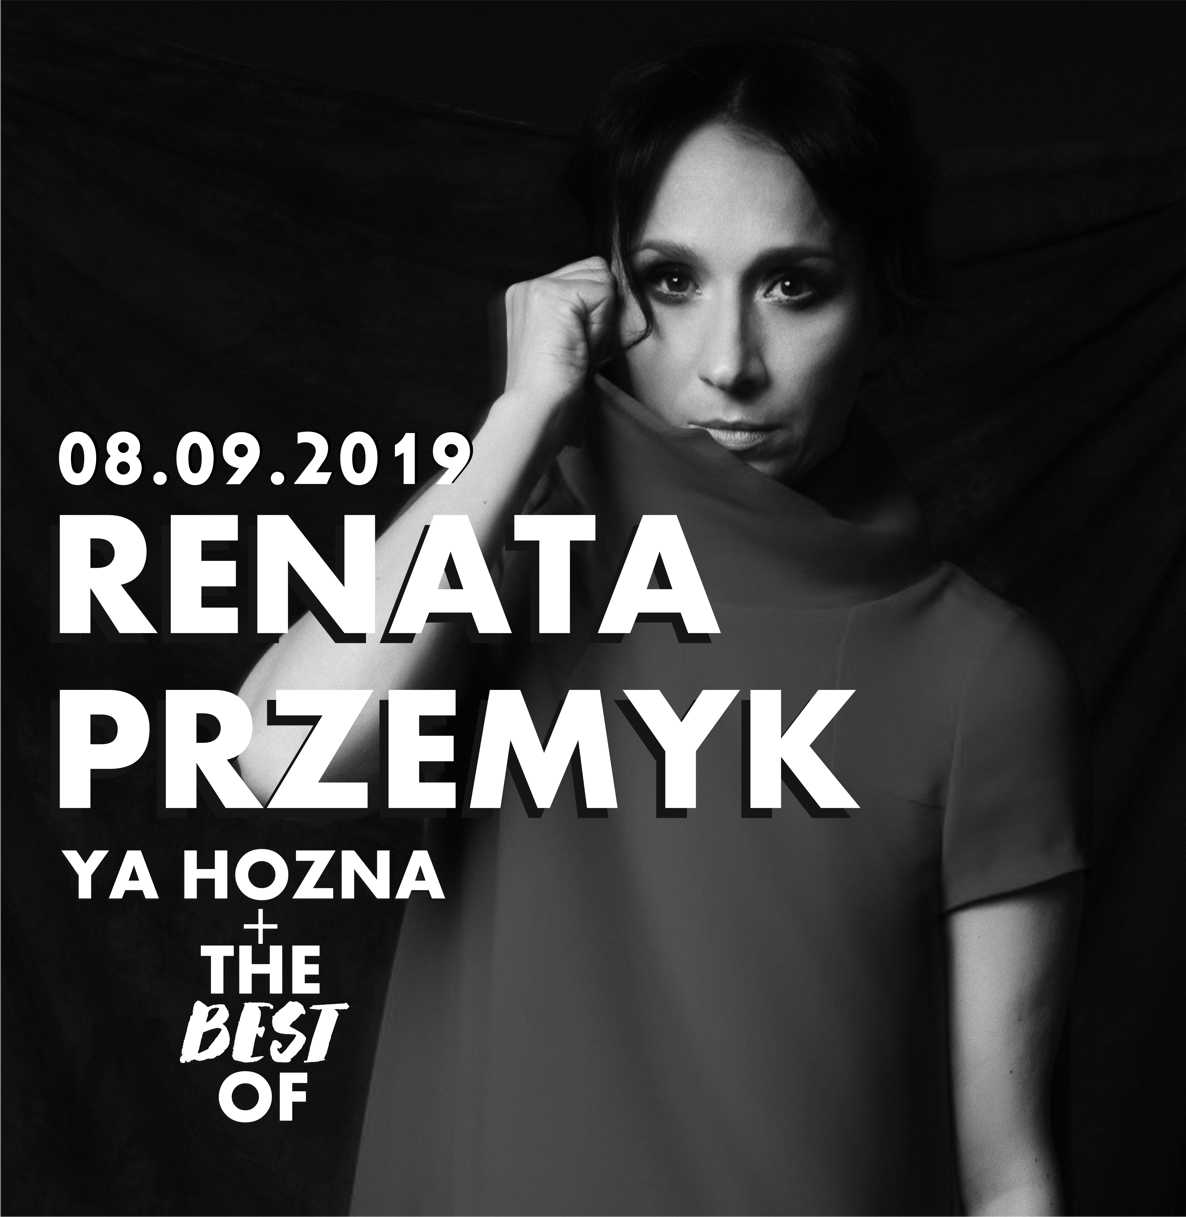 RENATA PRZEMYK Ya Hozna + the best of